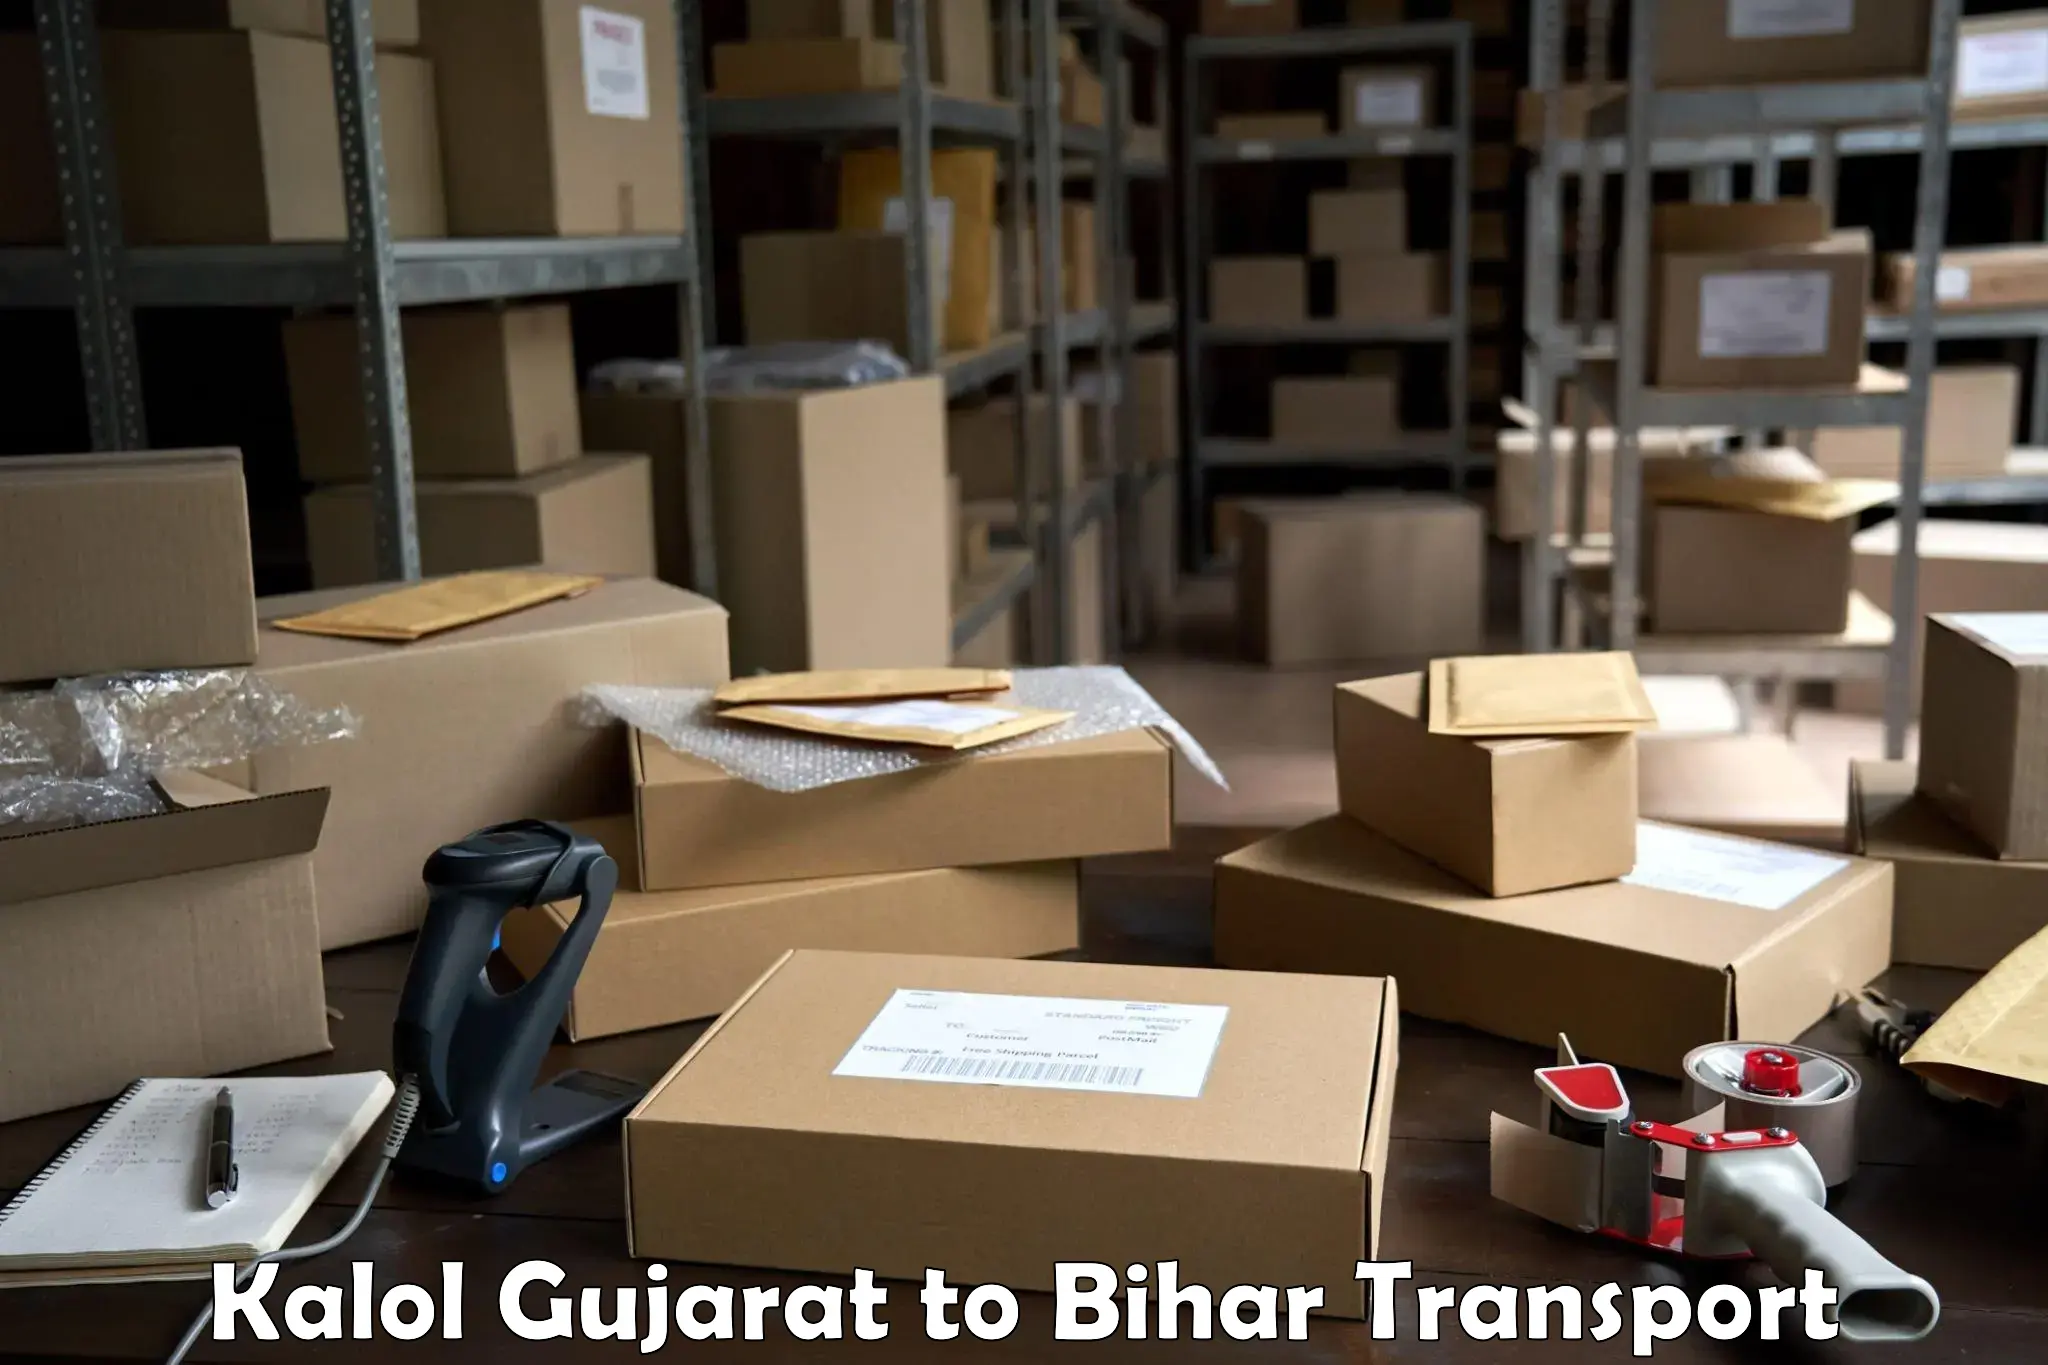 Delivery service Kalol Gujarat to Imamganj